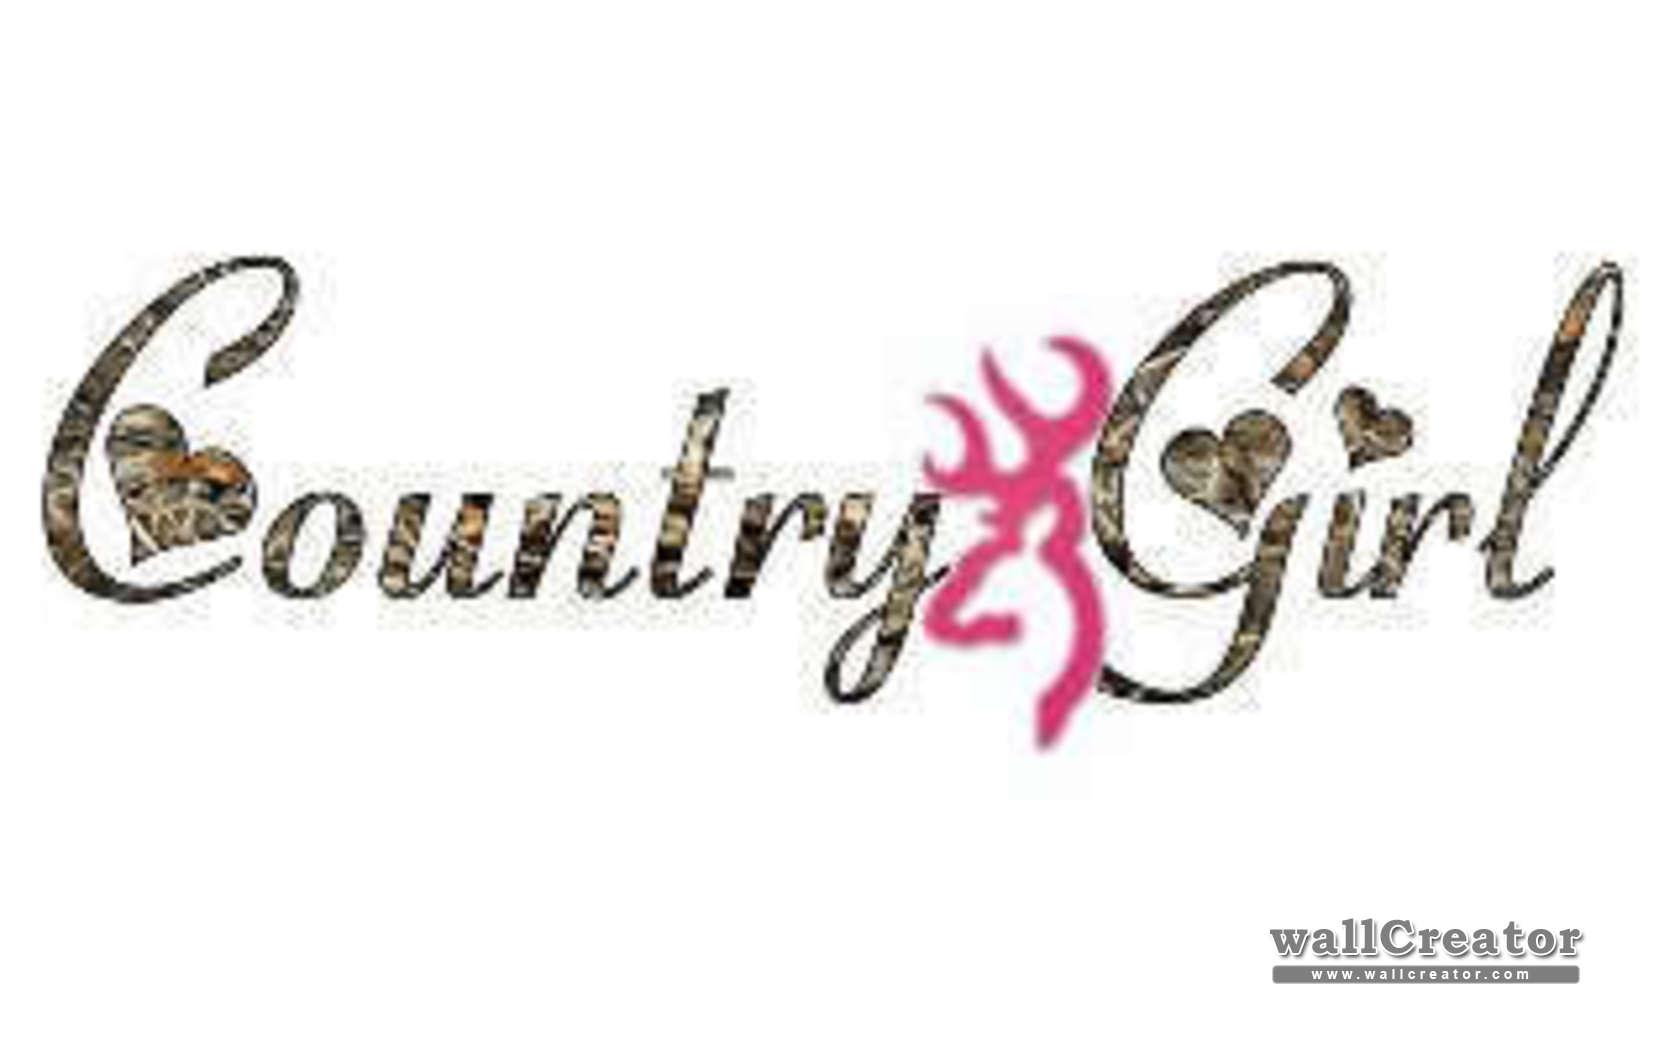 redneck girl logo